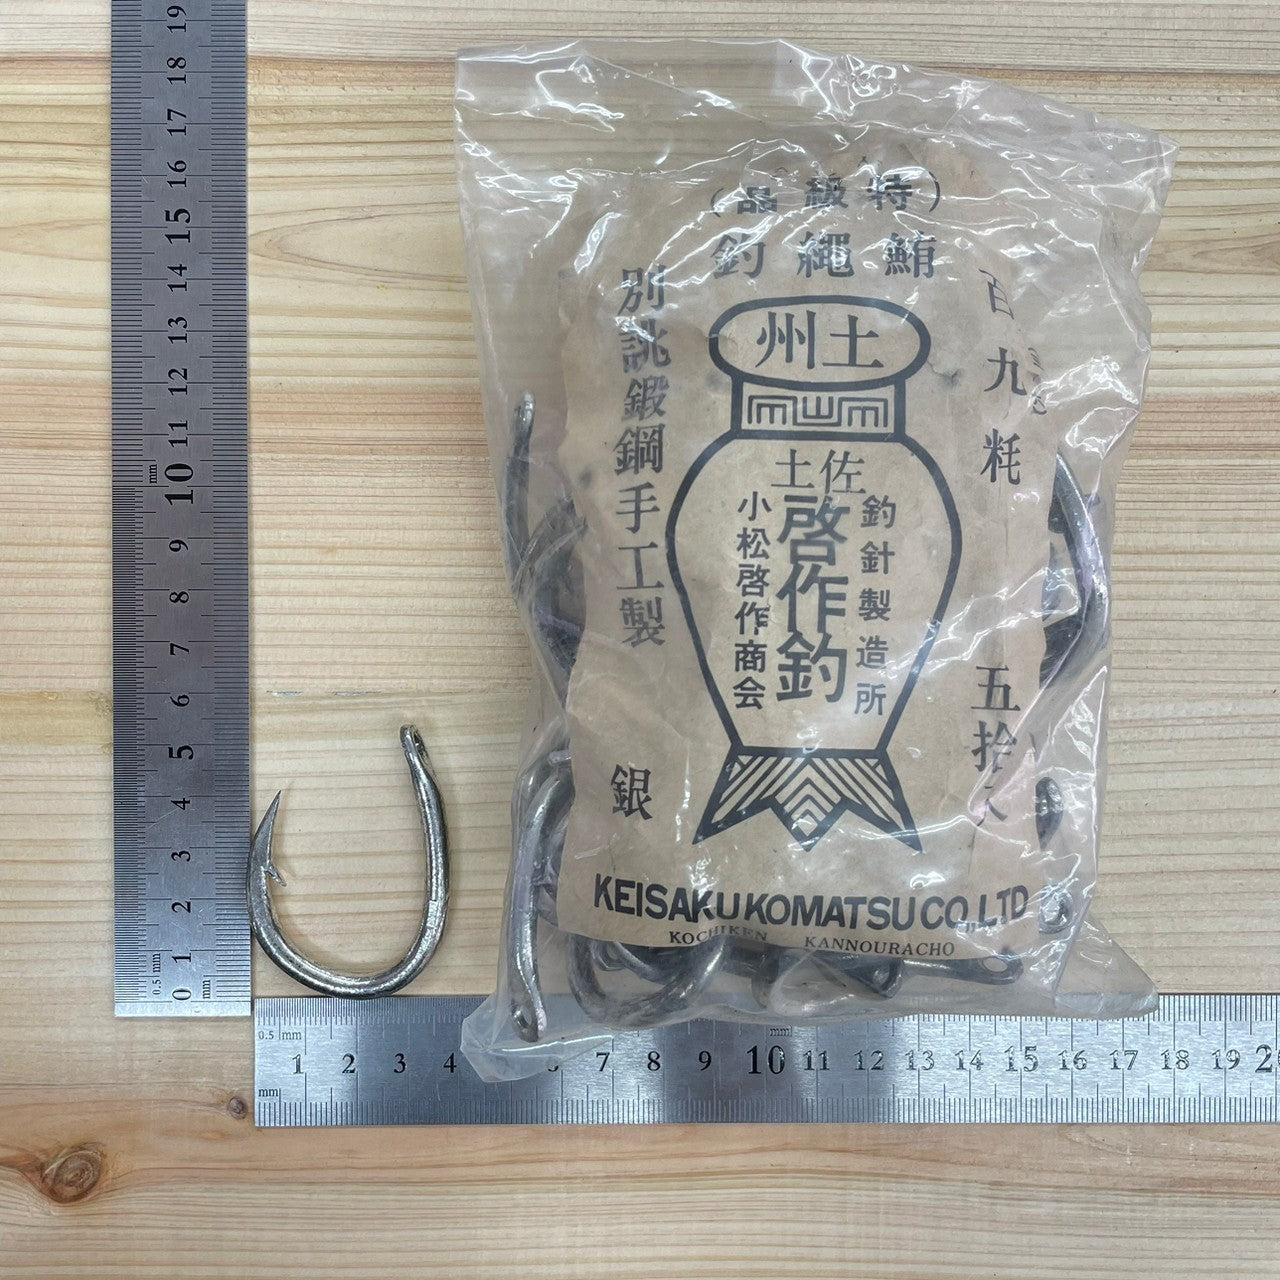 ■ (Free shipping) Tuna rope needle 50 swordfish needles